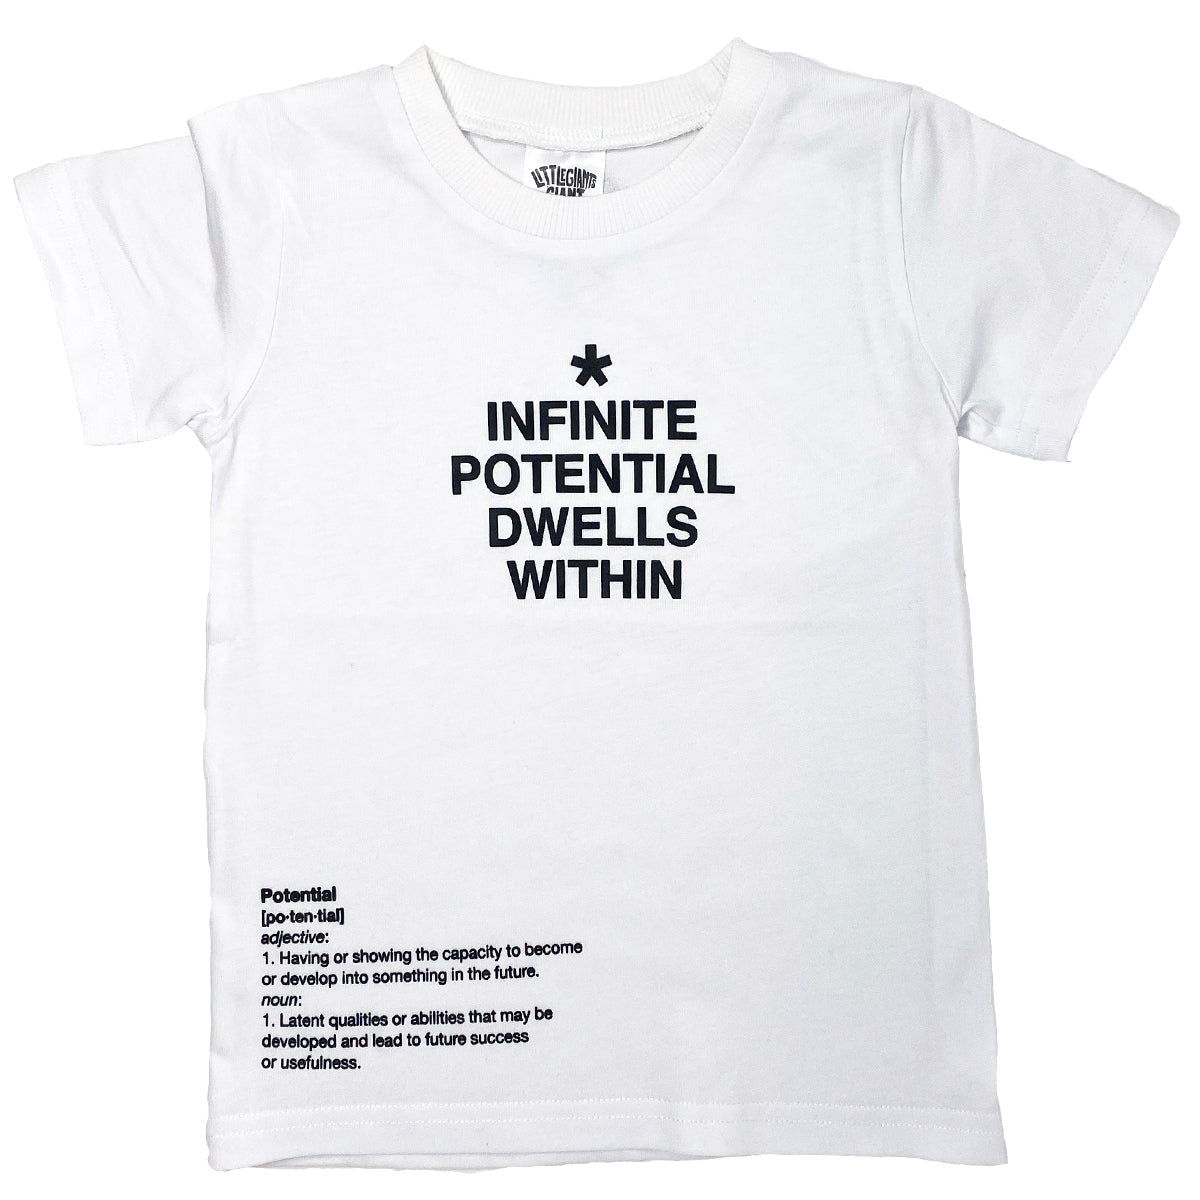 Baron Grund Påstået Infinite Potential T-Shirt (White) – Little Giants